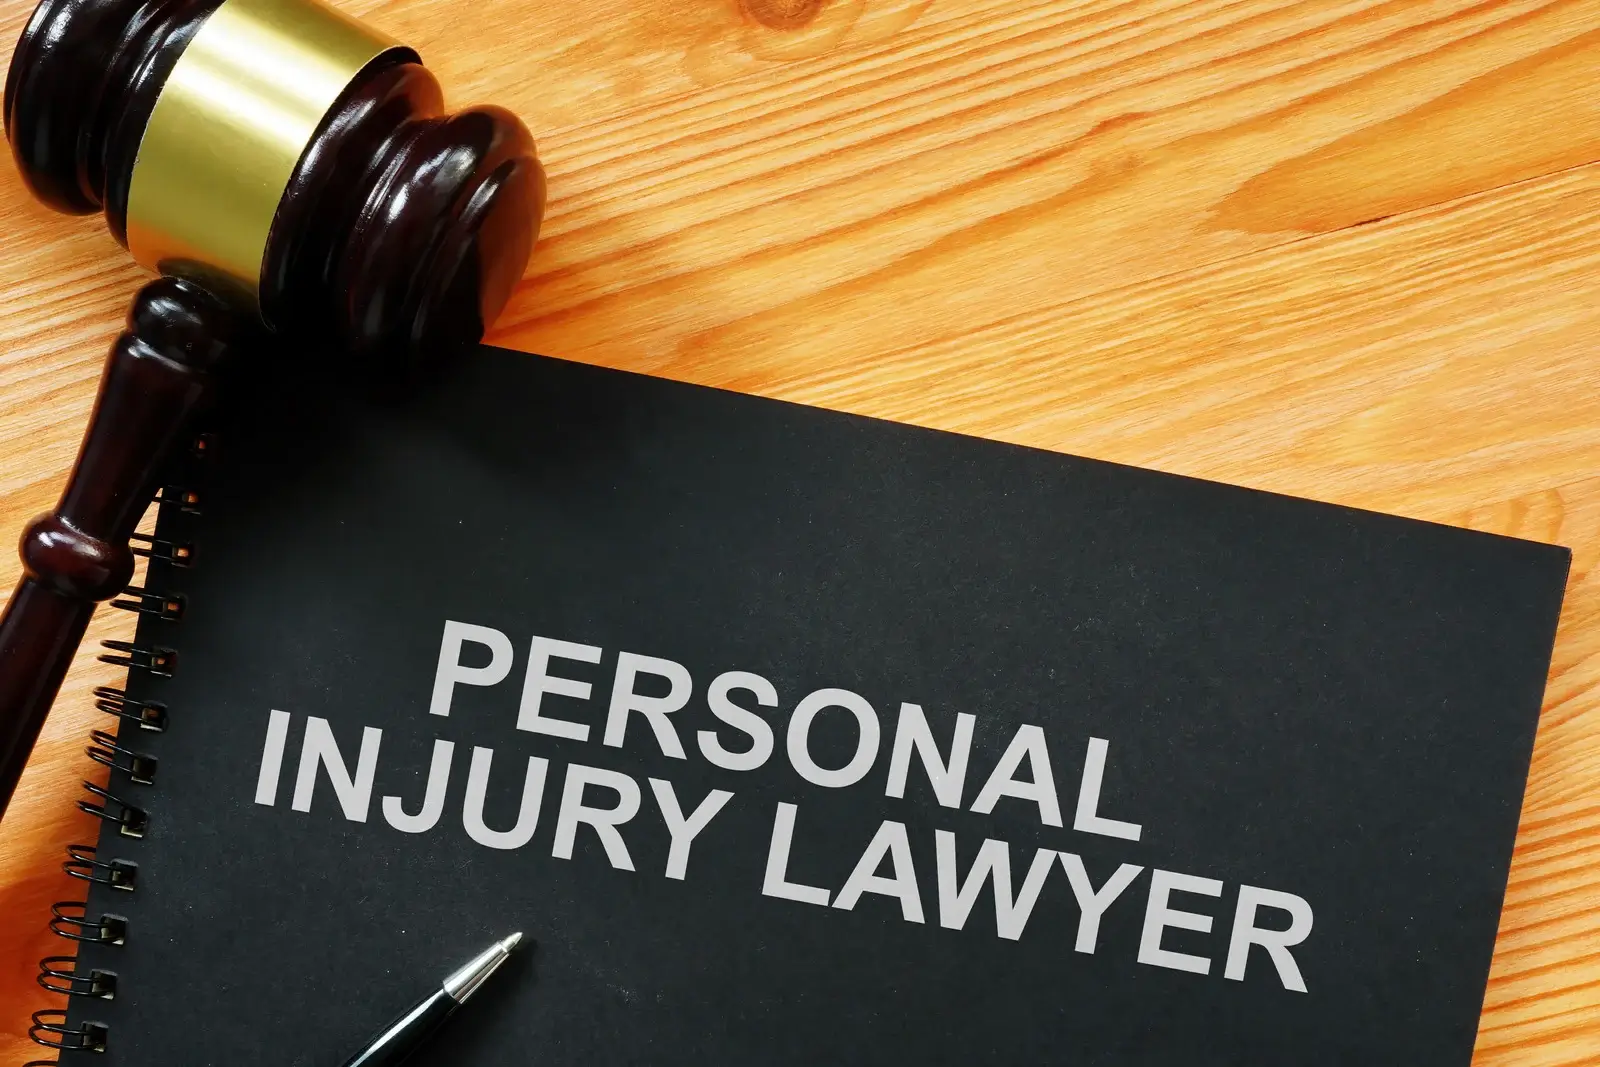 Alpine Law Group: Spokane Personal Injury Lawyer